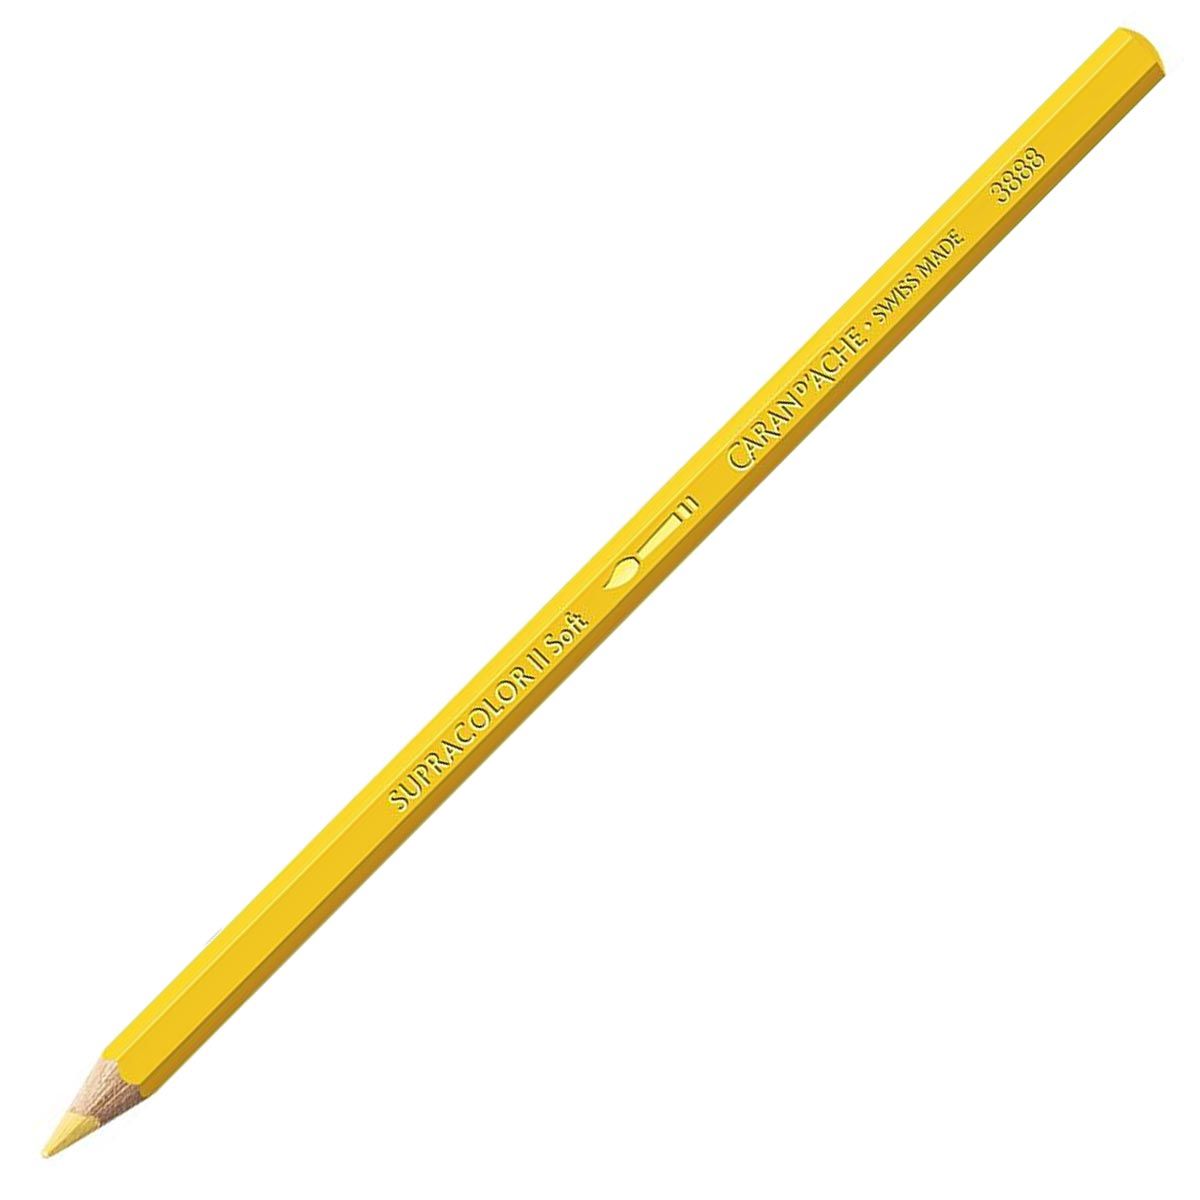 Caran d'Ache Supracolor ll Soft Aquarelle Pencil - Naples Yellow 021